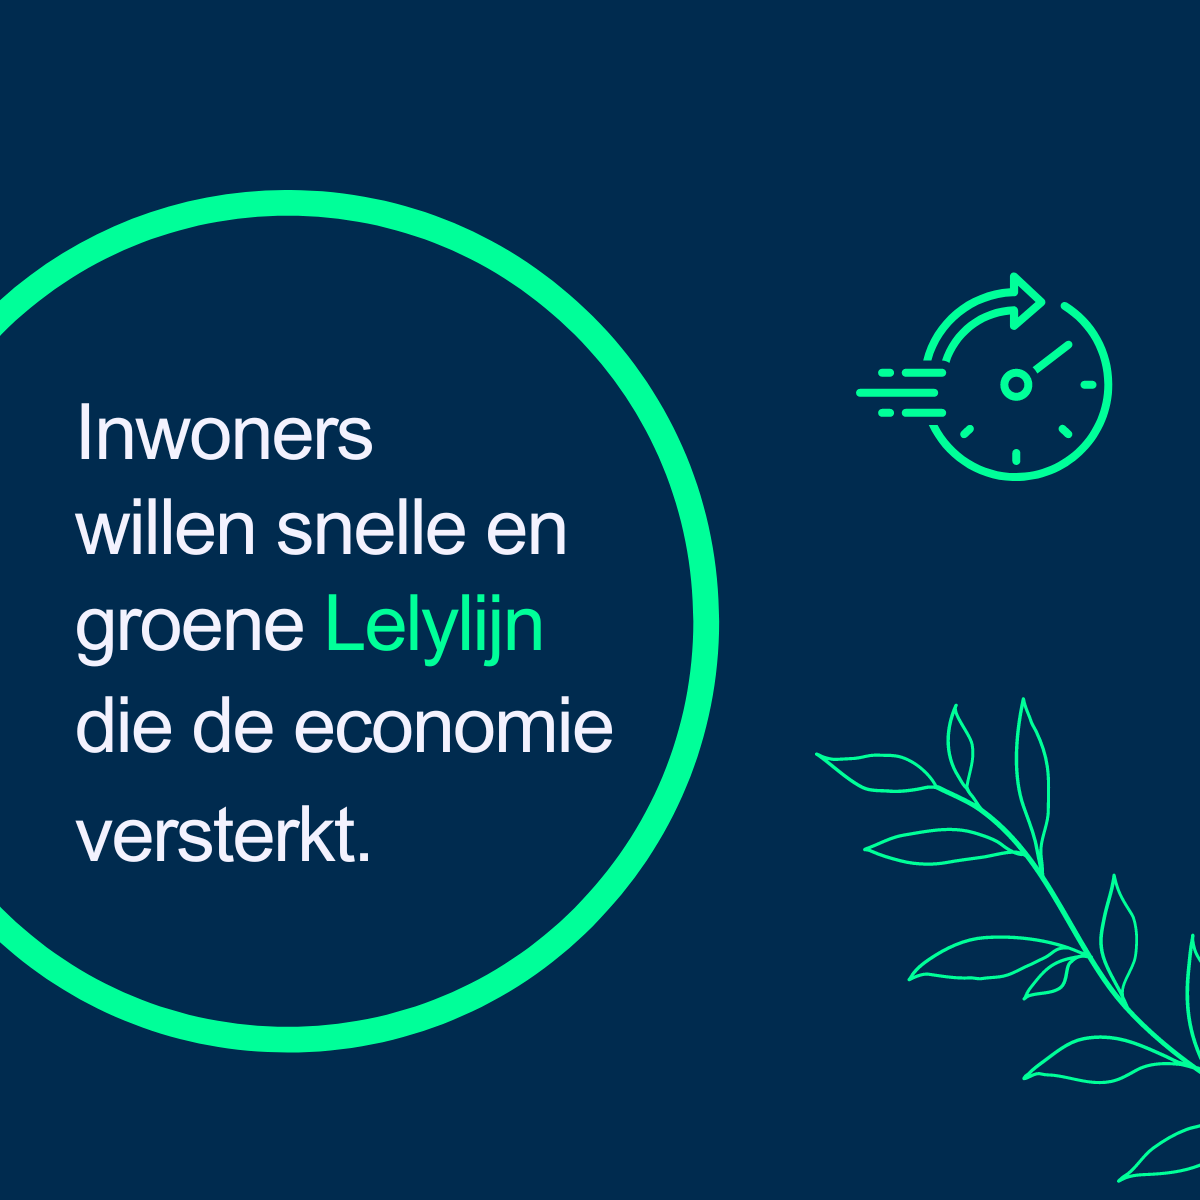 Inwoners willen snelle en groene Lelylijn die de economie versterkt.